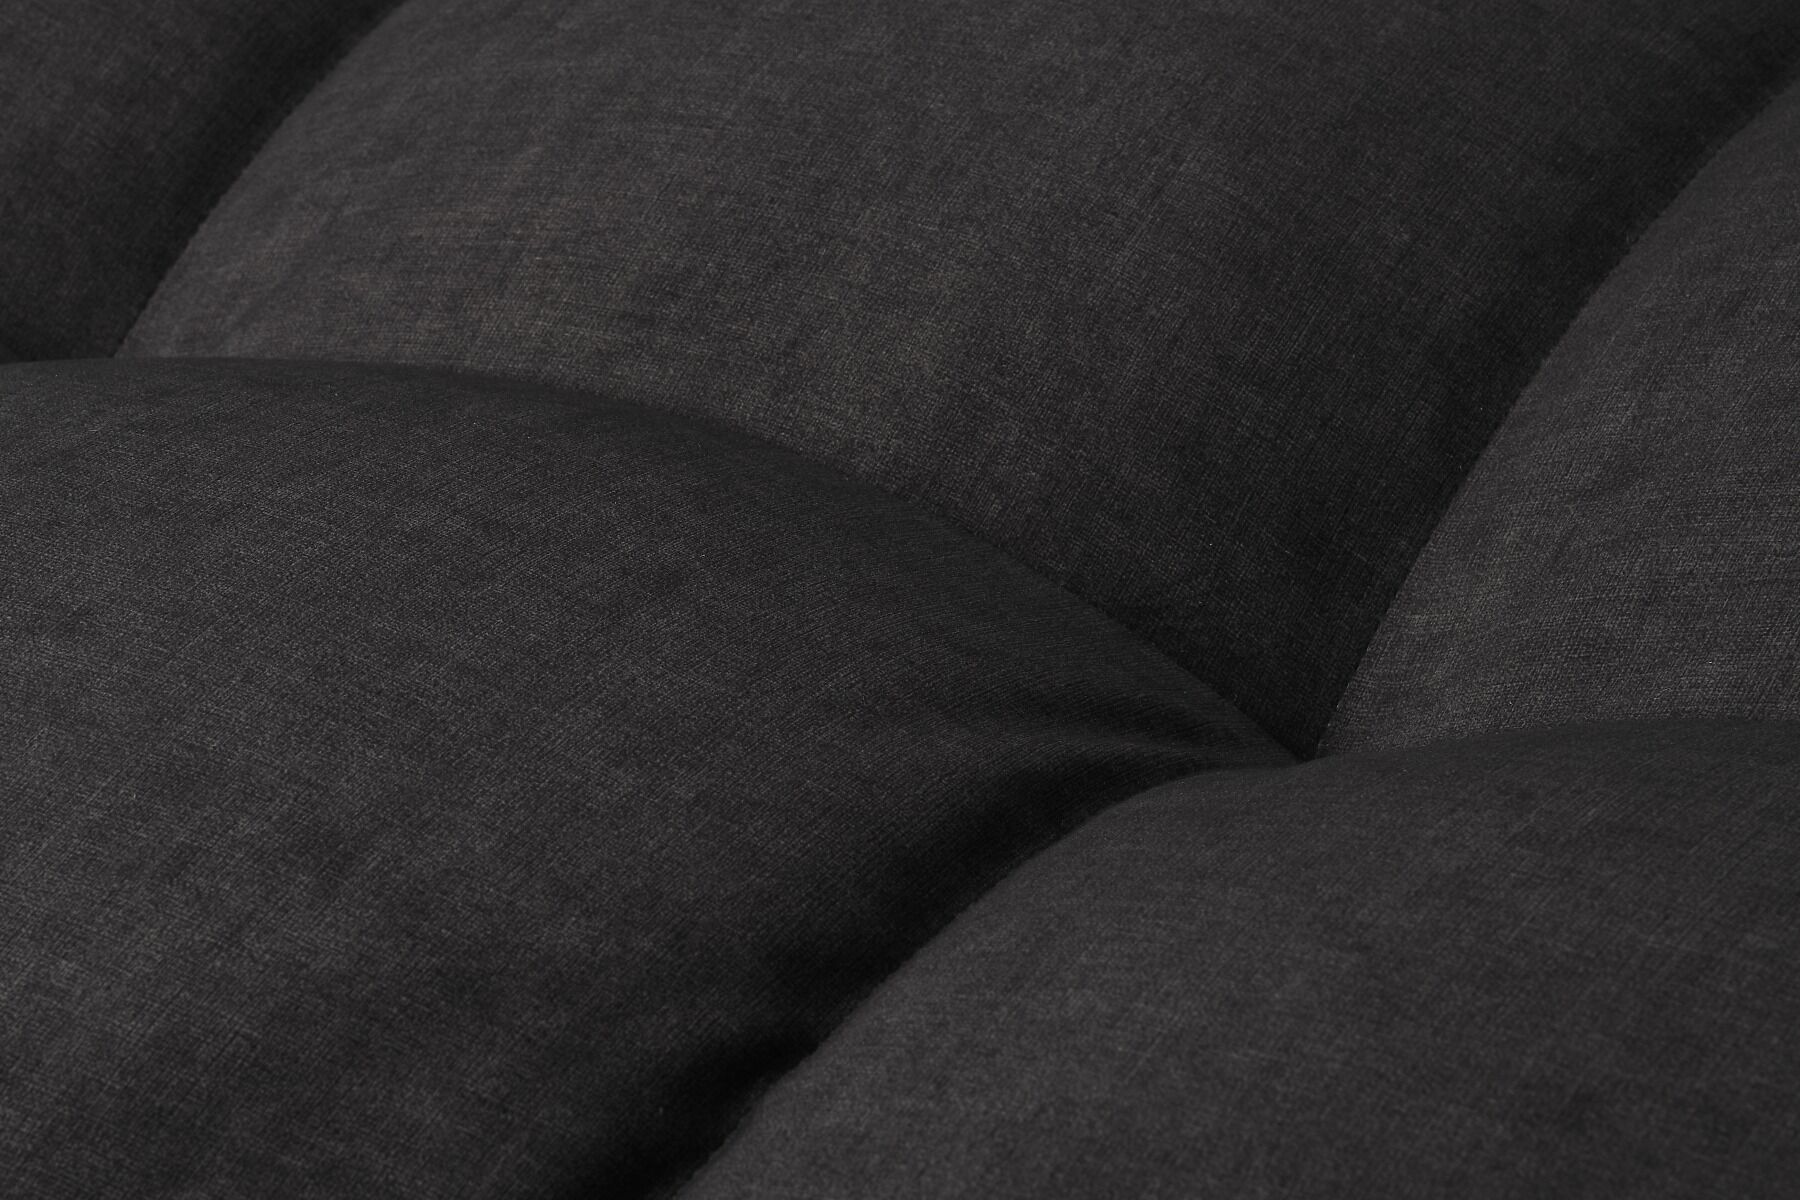 Sofa Trina 3 os 236x105x68cm